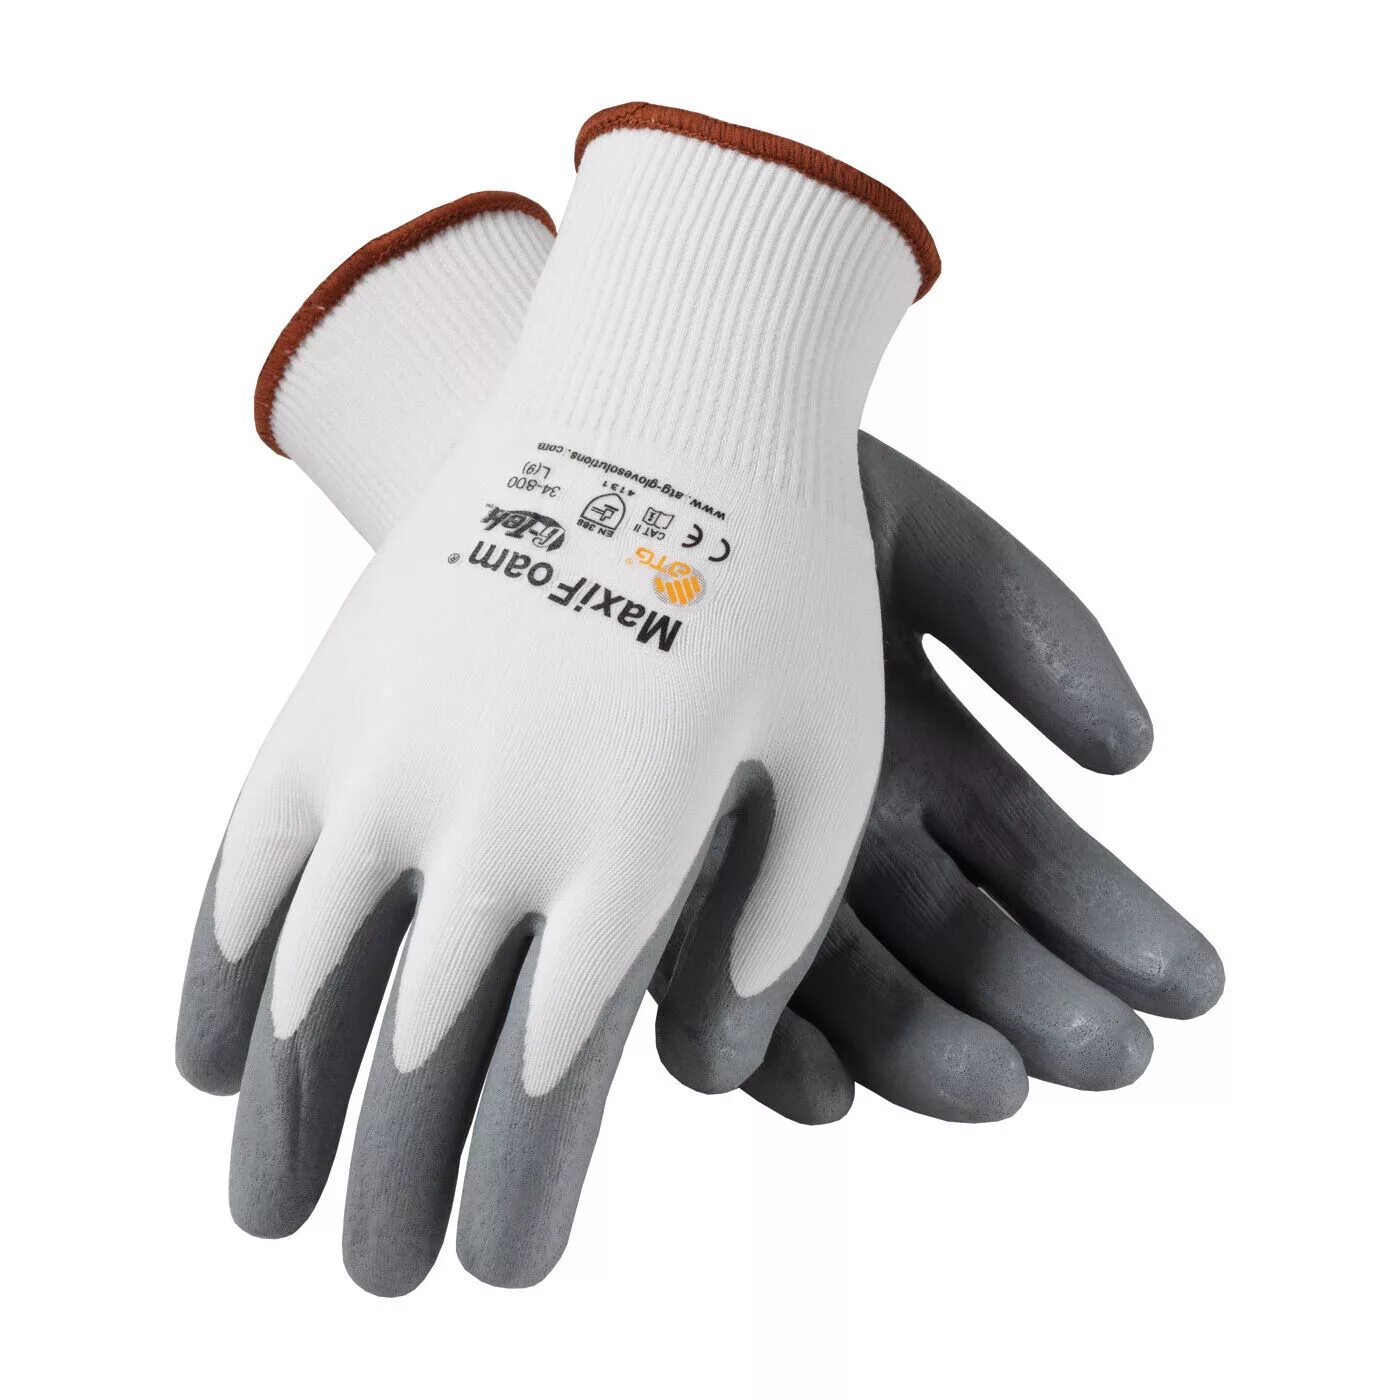 Строительные перчатки купить. Перчатки нитрил строительные. 92-013 Рабочие перчатки Ergo (размер: 9/l). Gloves, Cut Resistant, Size - l, Nitrile, Palm-Dipped, Polyester, nylon, 13 gg 8 размер. Перчатки вспененный нитрил.